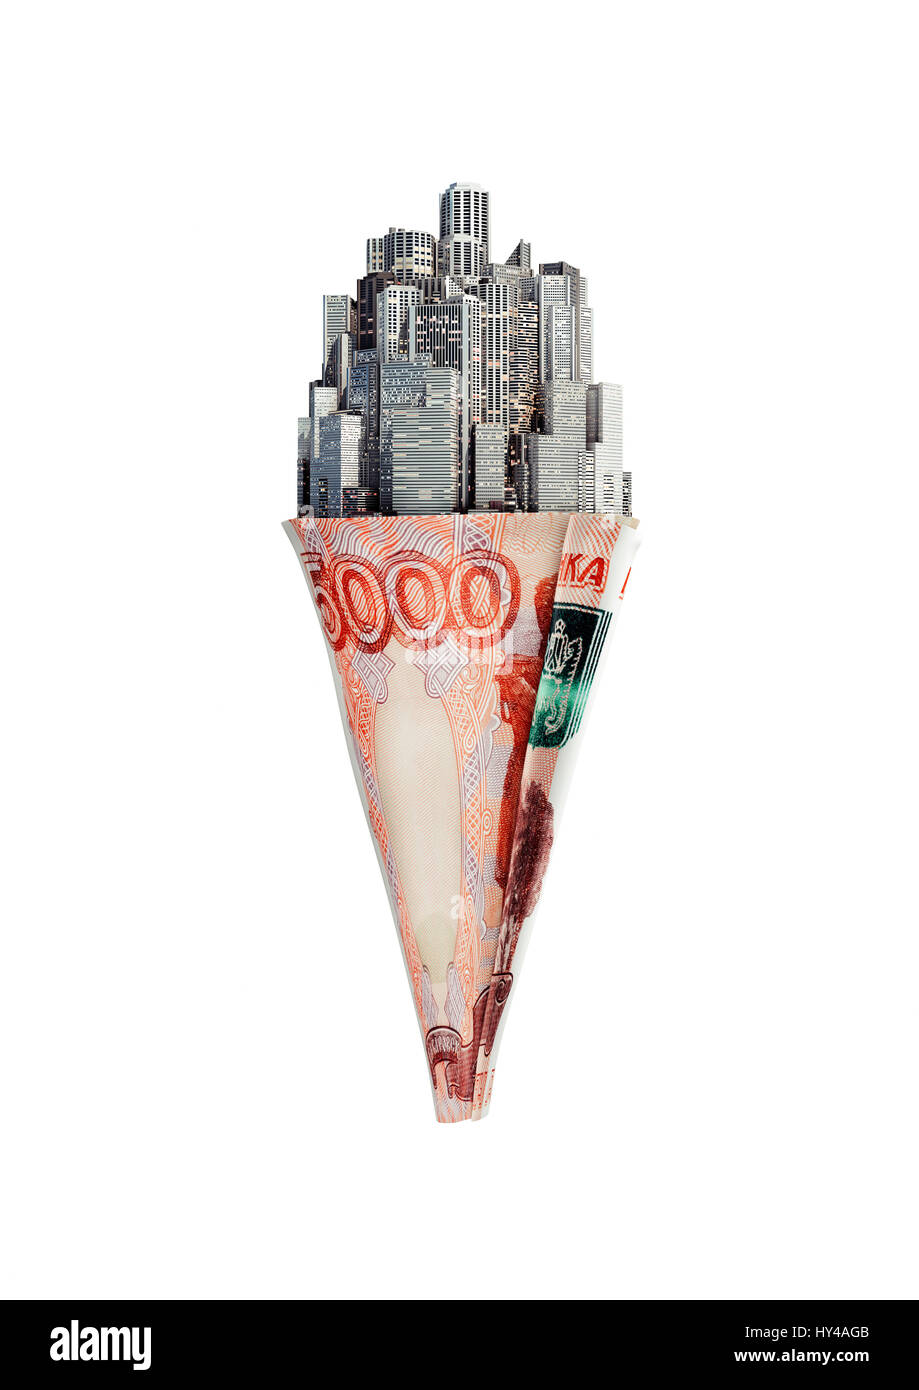 Geld Kegel russischer Rubel / 3D Darstellung der Stadt Eis Kegel mit fünf Tausend Rubel Hinweis Stockfoto